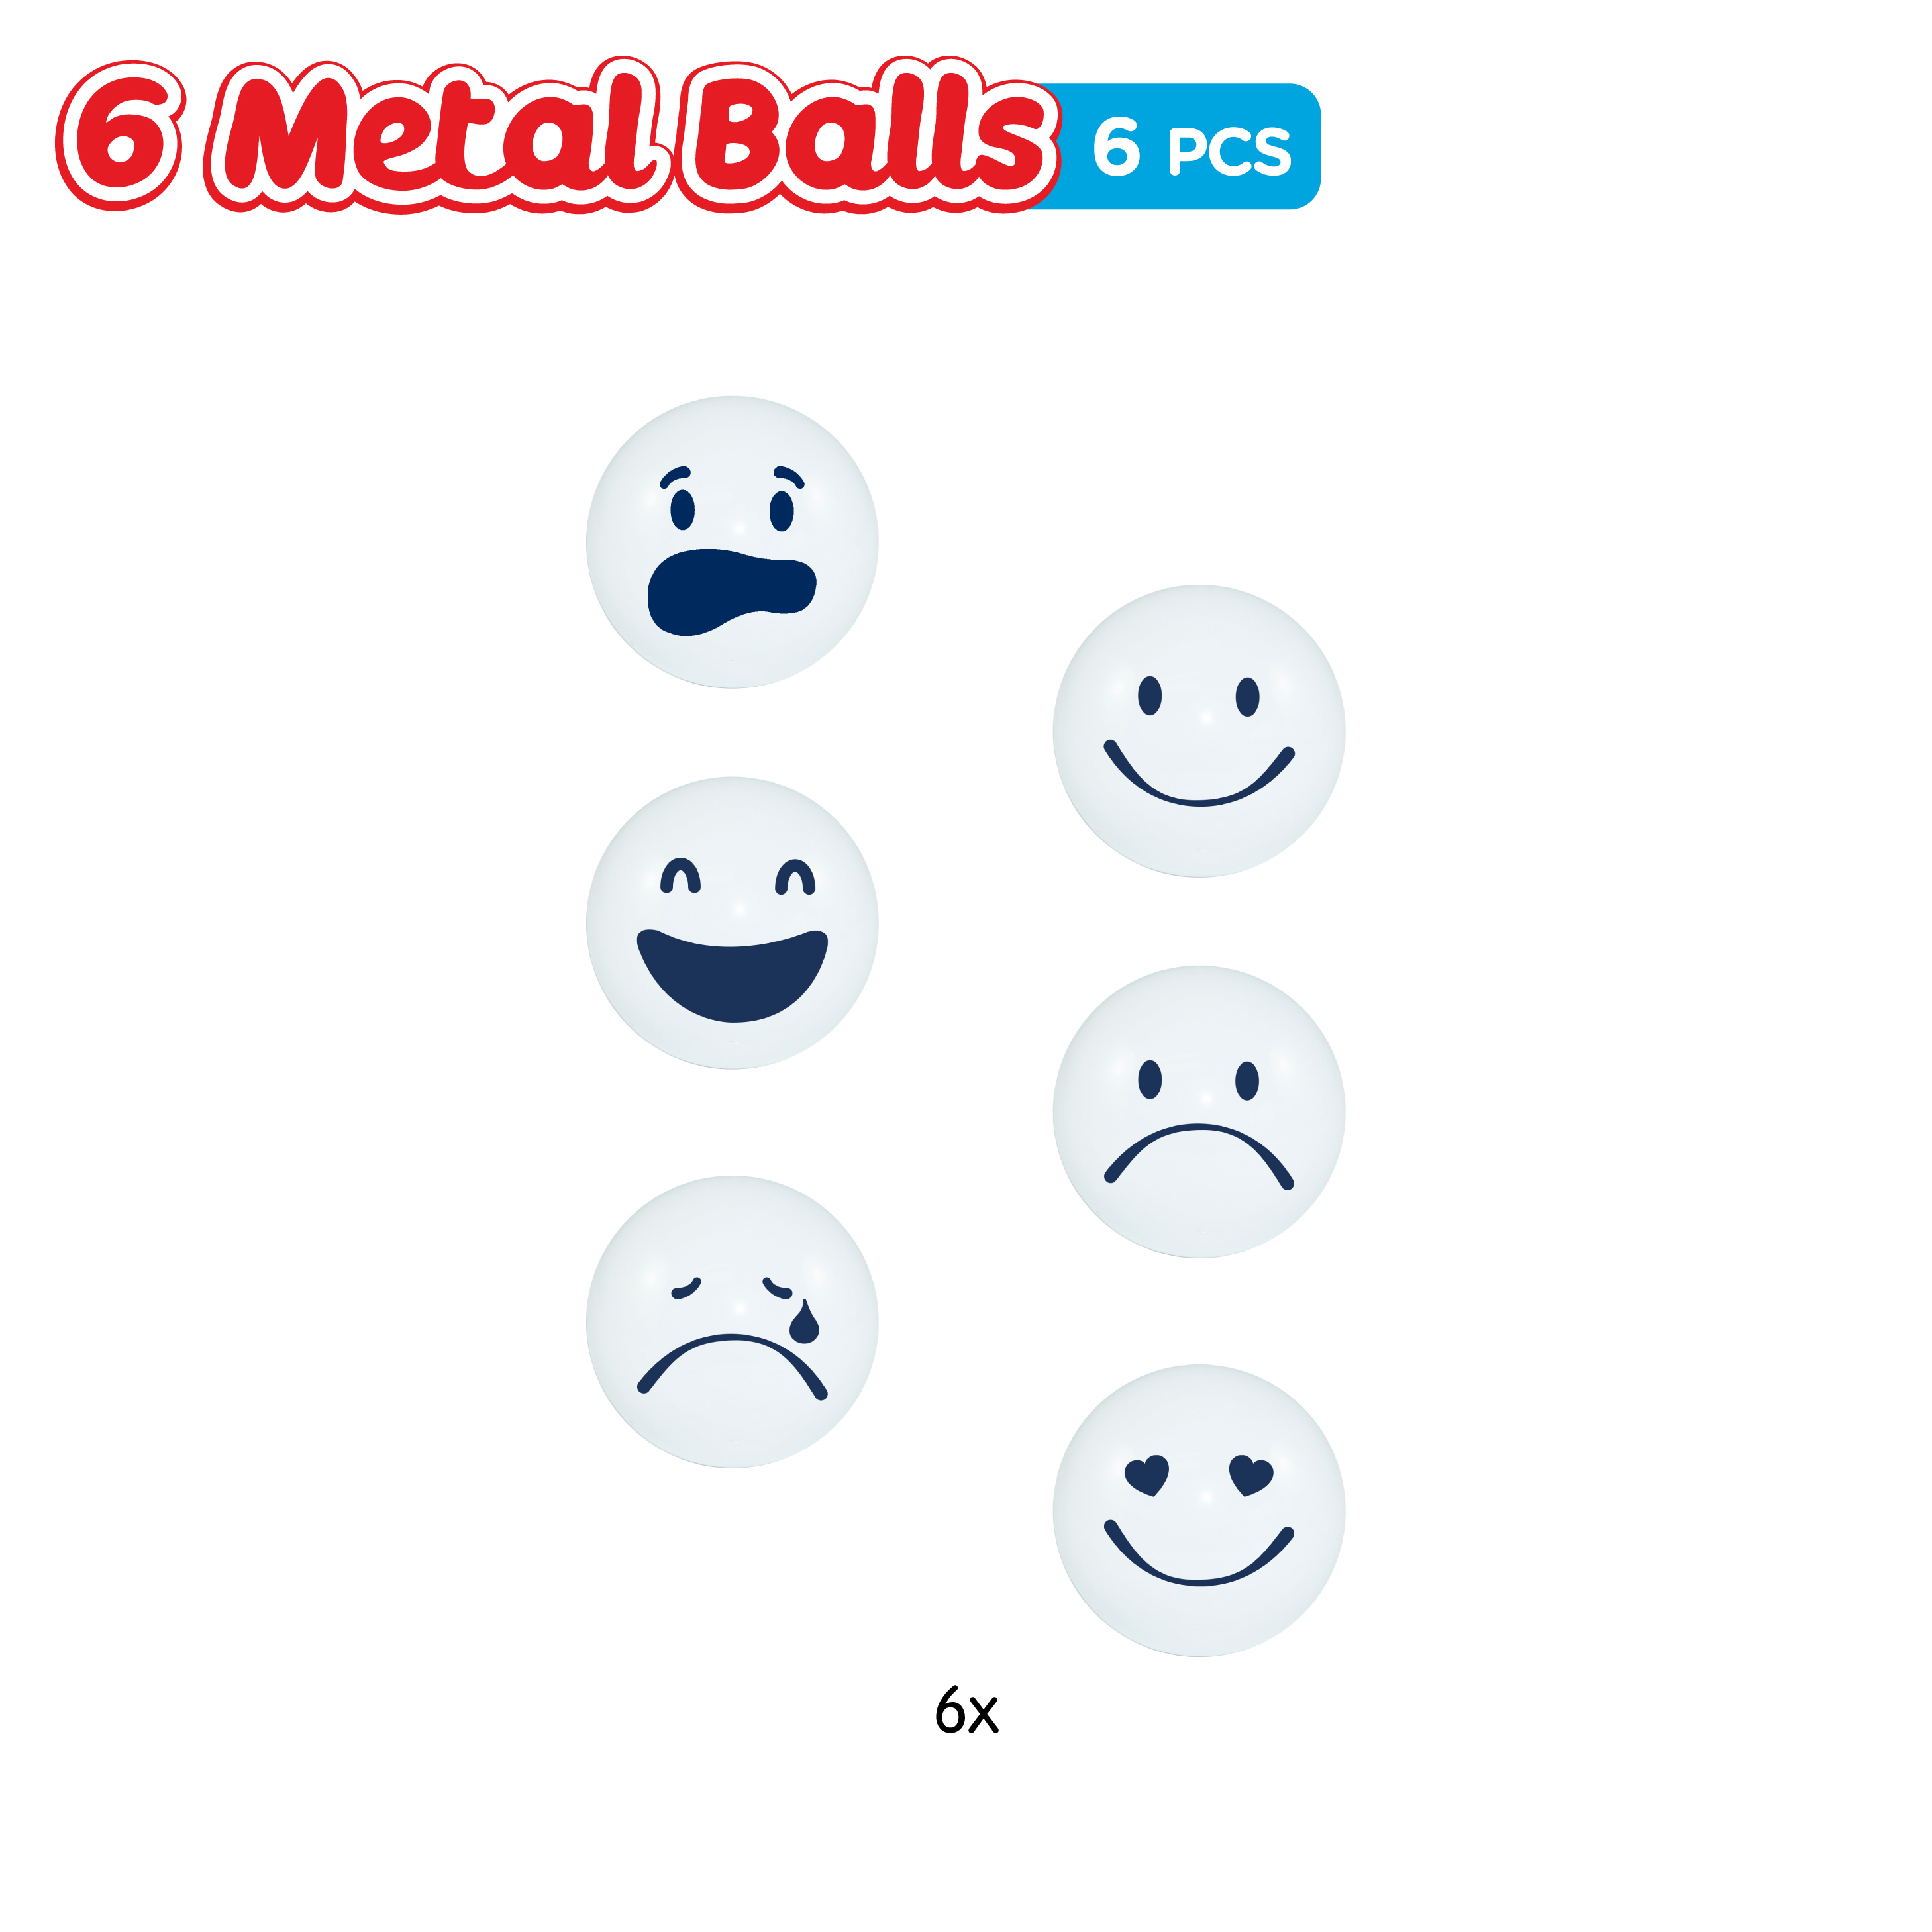 6 Metal Balls